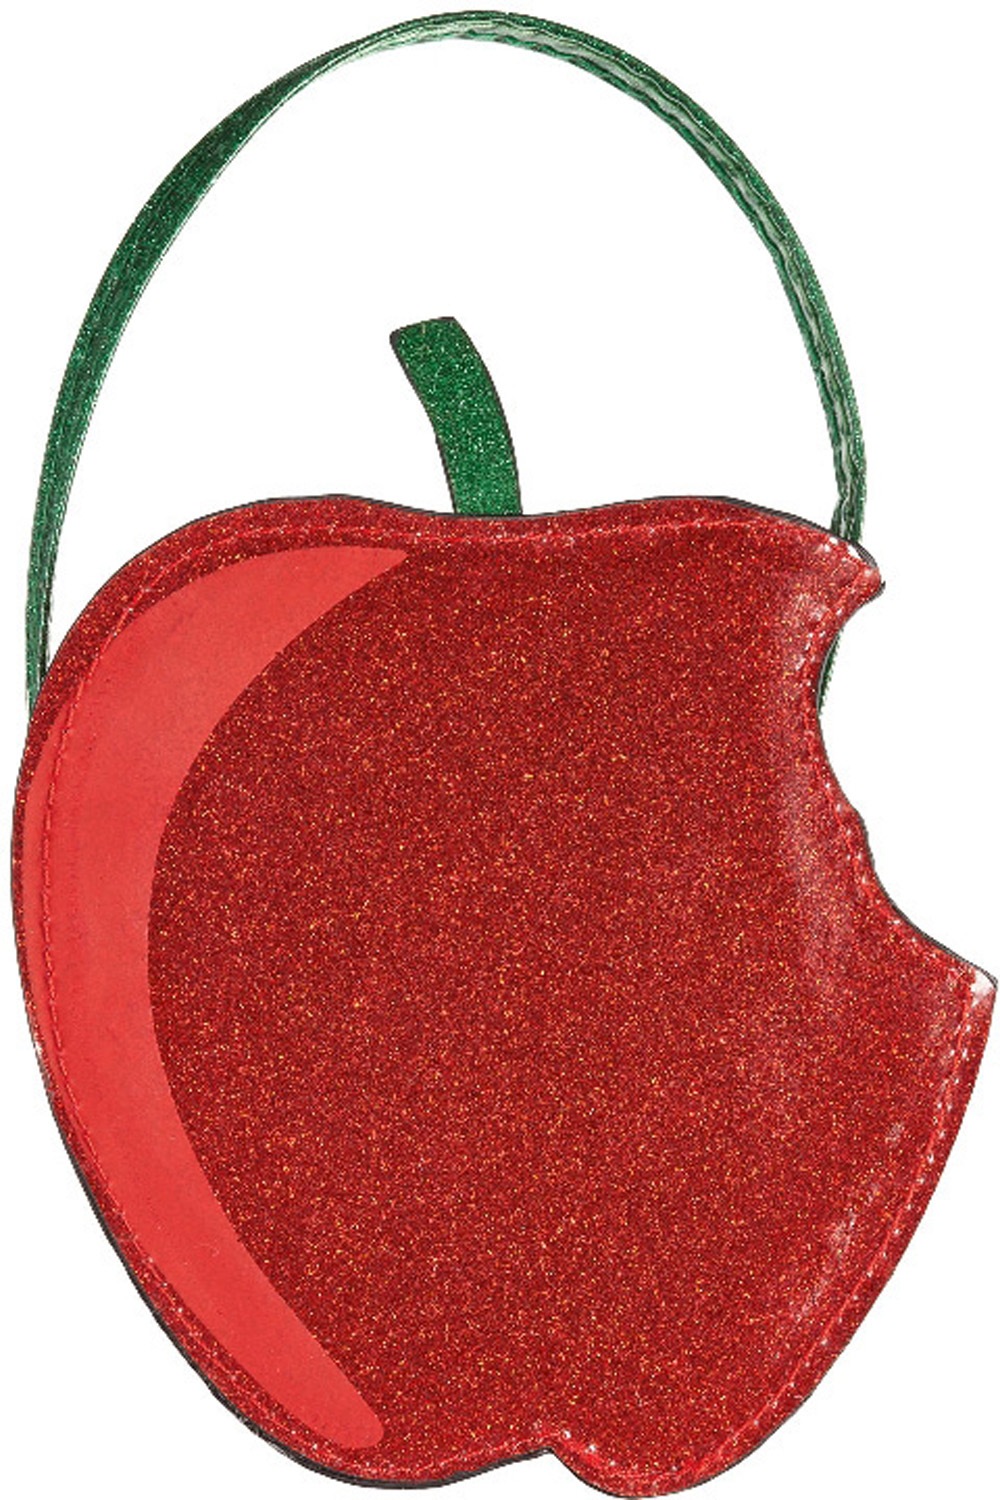 Miki House Knitted Apple Cross-Body Bag | Harrods IN